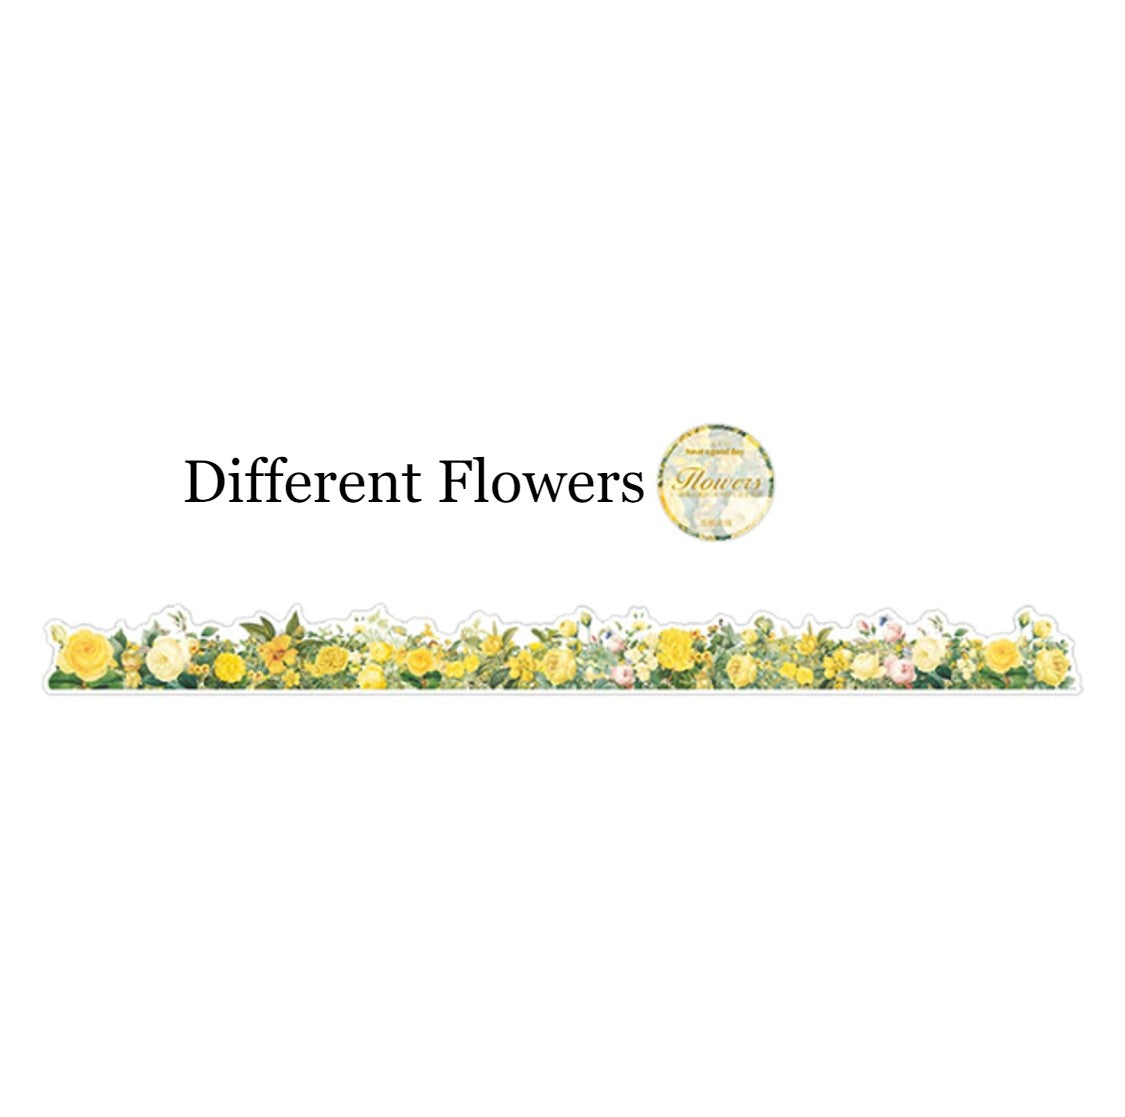 Colección de Washitapes Troquelados "Flowers Bloom”